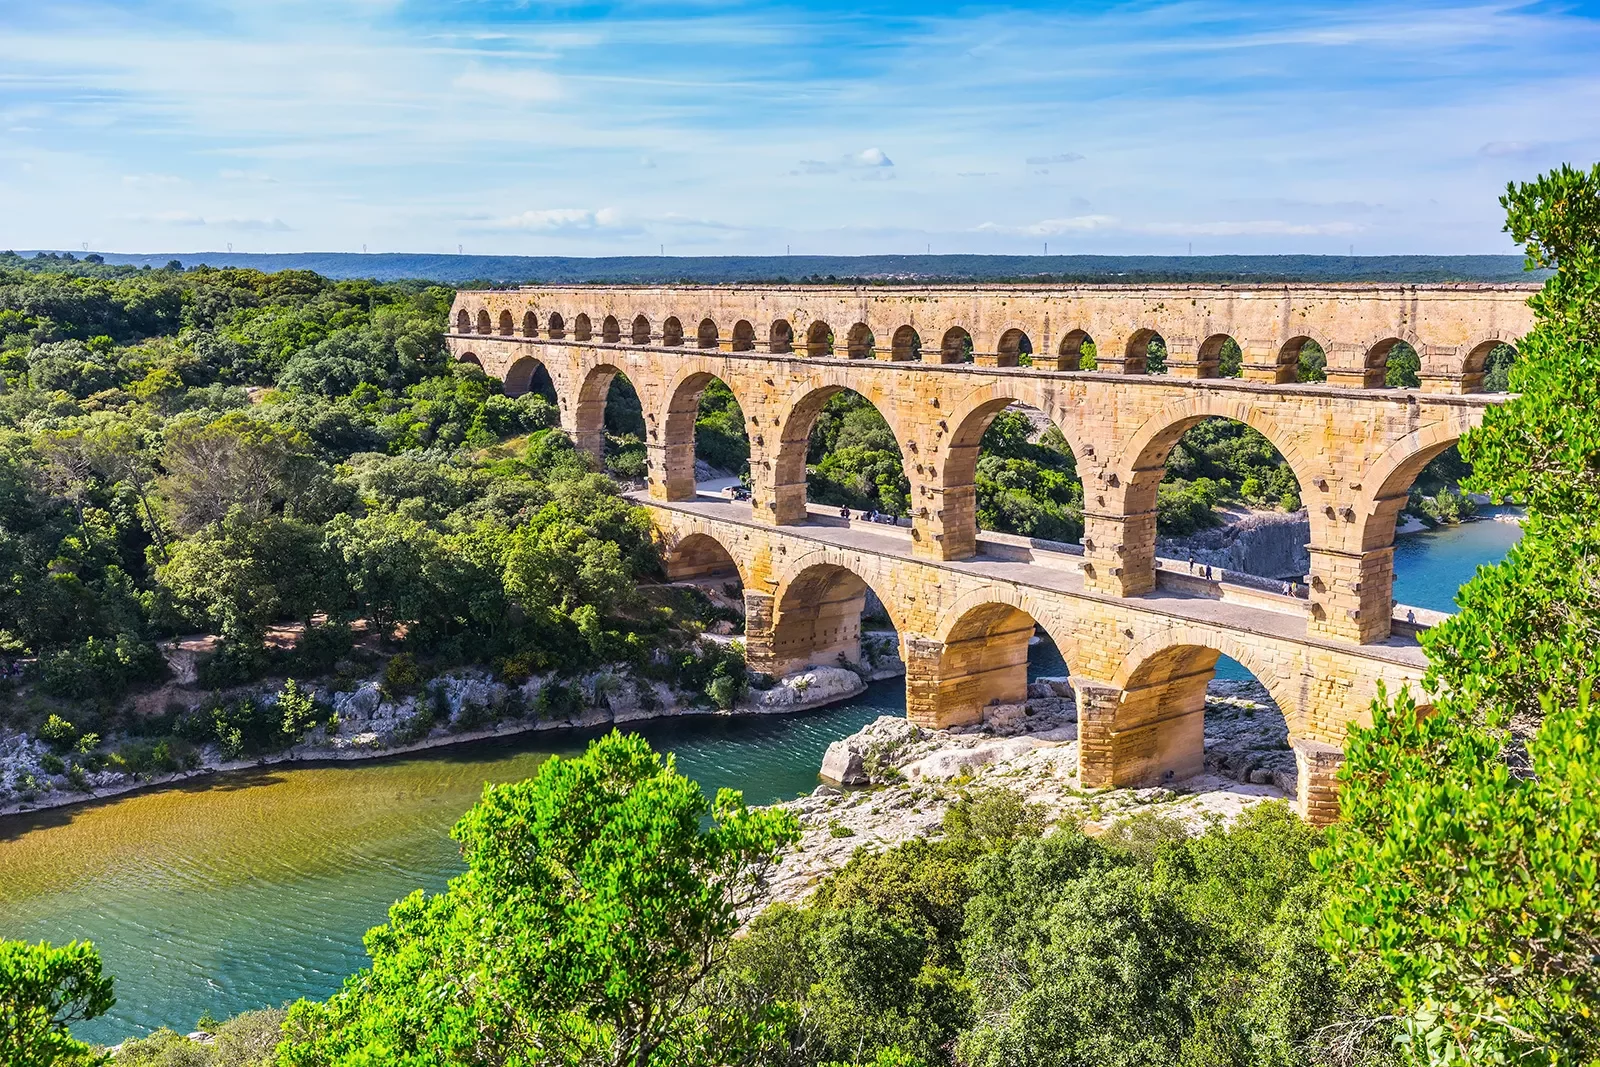 Pont du Gard Aqueduct in Provence, France